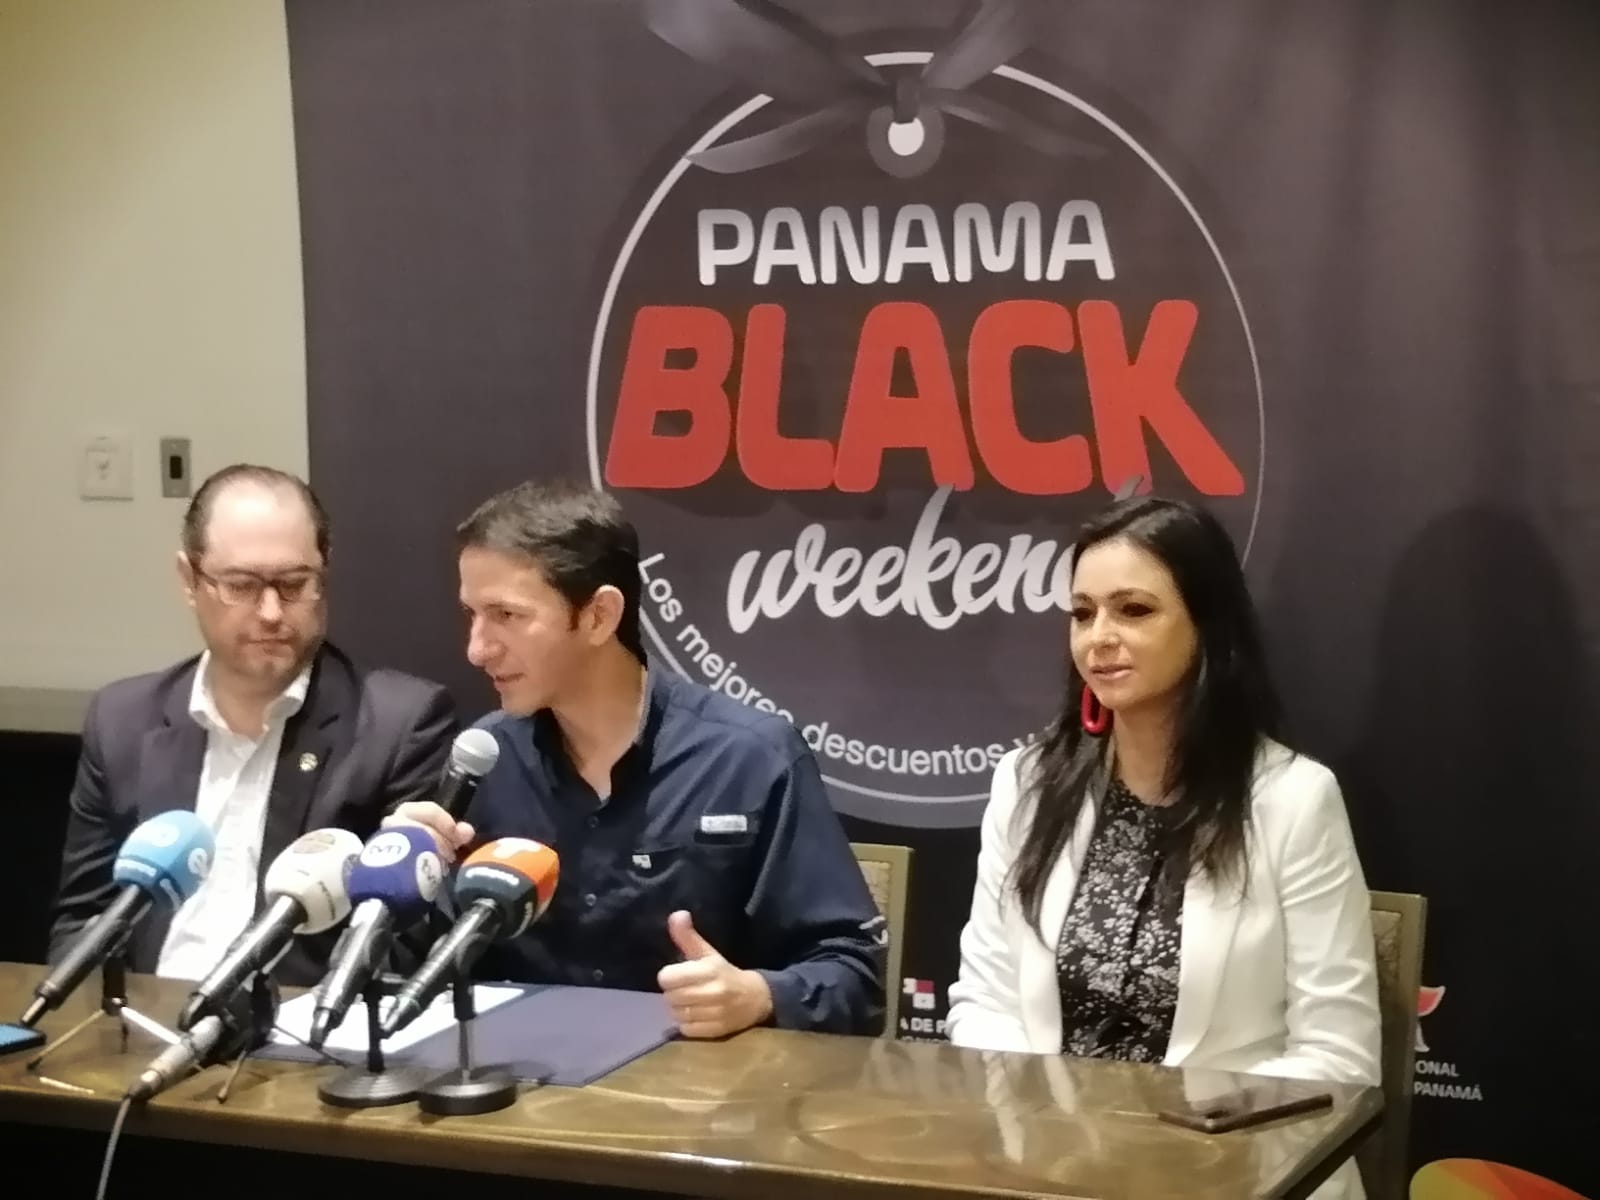    En conferencia de prensa, este lunes, se informó que el Panamá Black Weekend (PBW) que se realizó a nivel nacional del 14 al 18 de septiembre cerró con ventas aproximadas de $84 millones,  un incremento del 20%